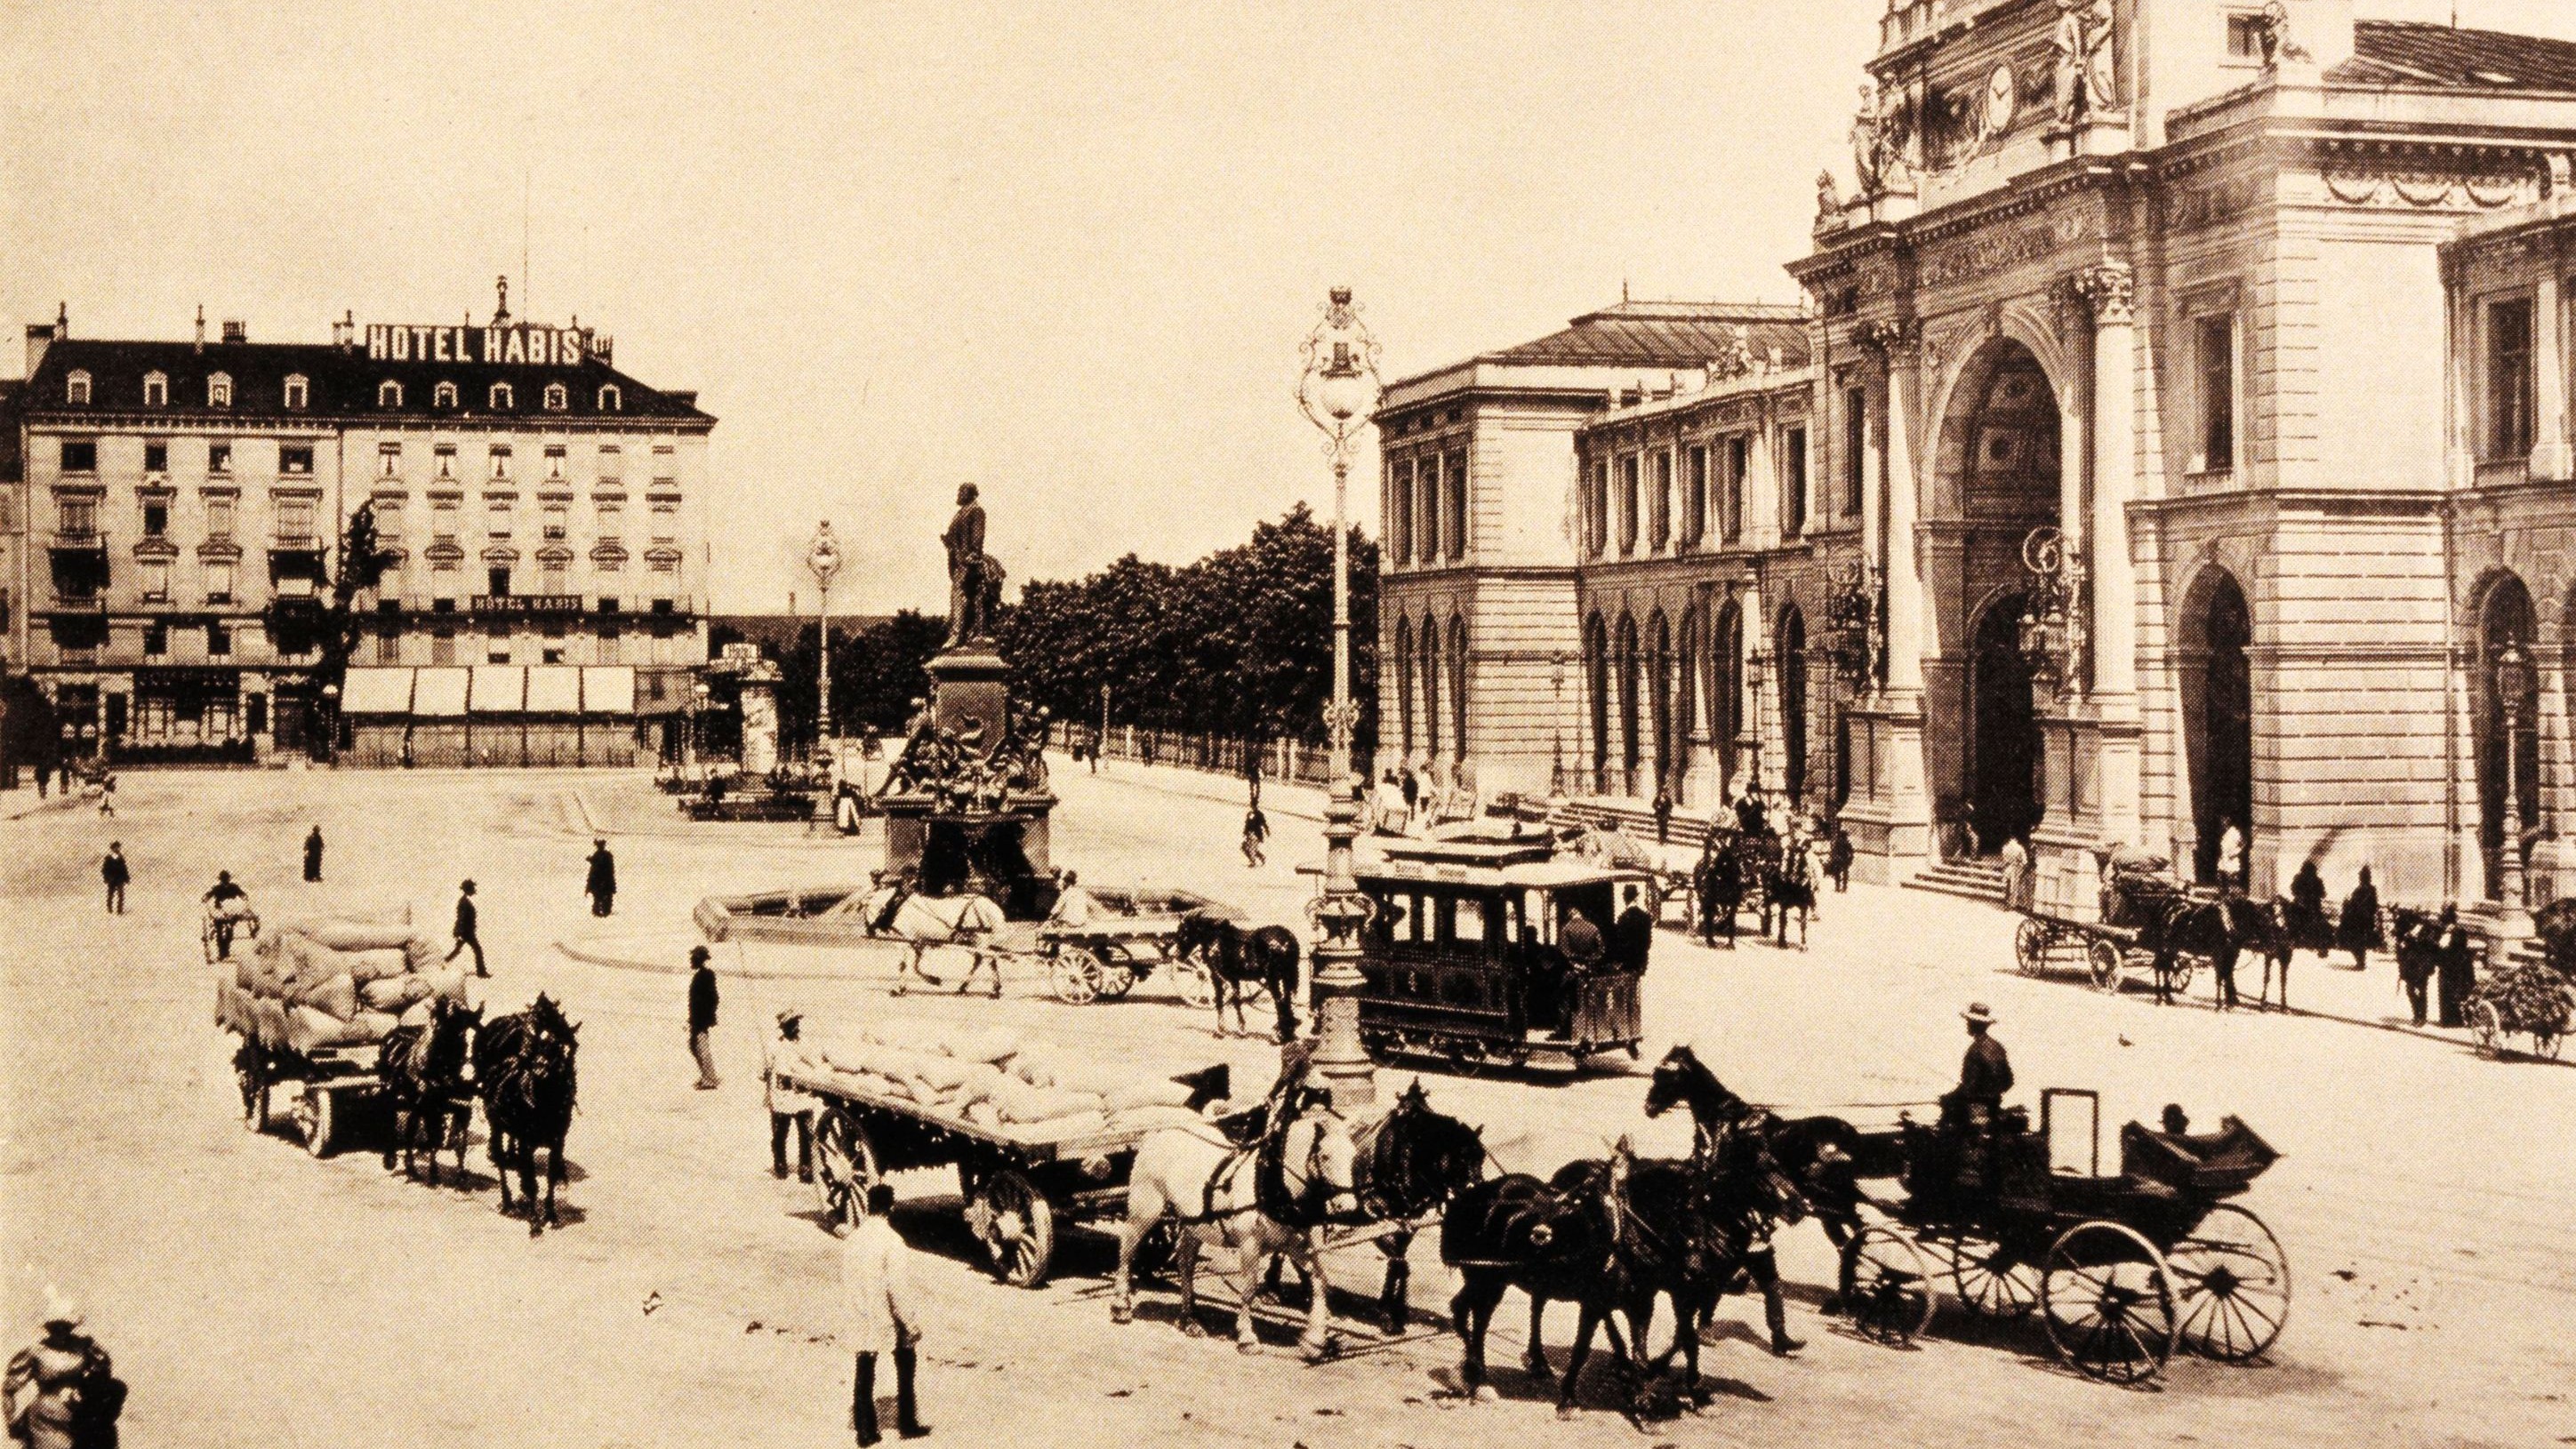 Langsam aber sicher nimmt der Bahnhofplatz Gestalt an: Das Alfred-Escher-Denkmal wurde 1889 aufgestellt und brachte frischen Wind in den öffentlichen Platz. Nach wie vor verkehrten auf den Strassen aber keine Autos oder Trams, sondern Pferde.